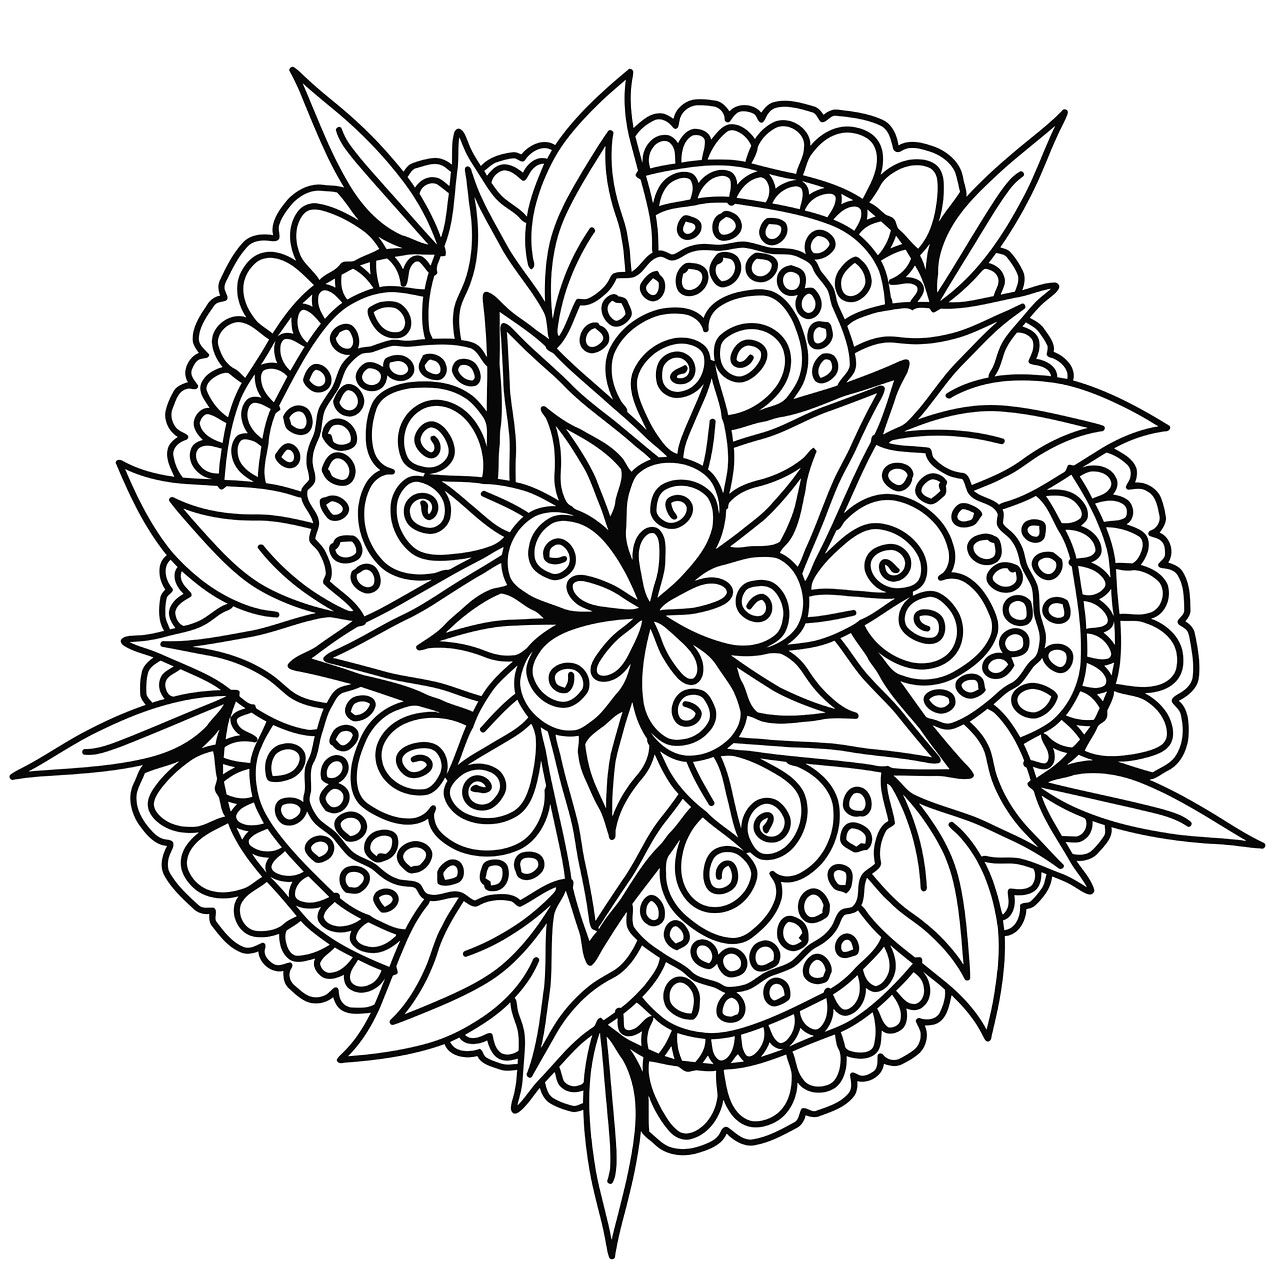 Ein hübsches, sehr originelles, handgezeichnetes Mandala, das von den Schönheiten der Natur inspiriert ist. Färben Sie es mit Ihrer eigenen Persönlichkeit ein und denken Sie an nichts anderes als an das Ausmalen.